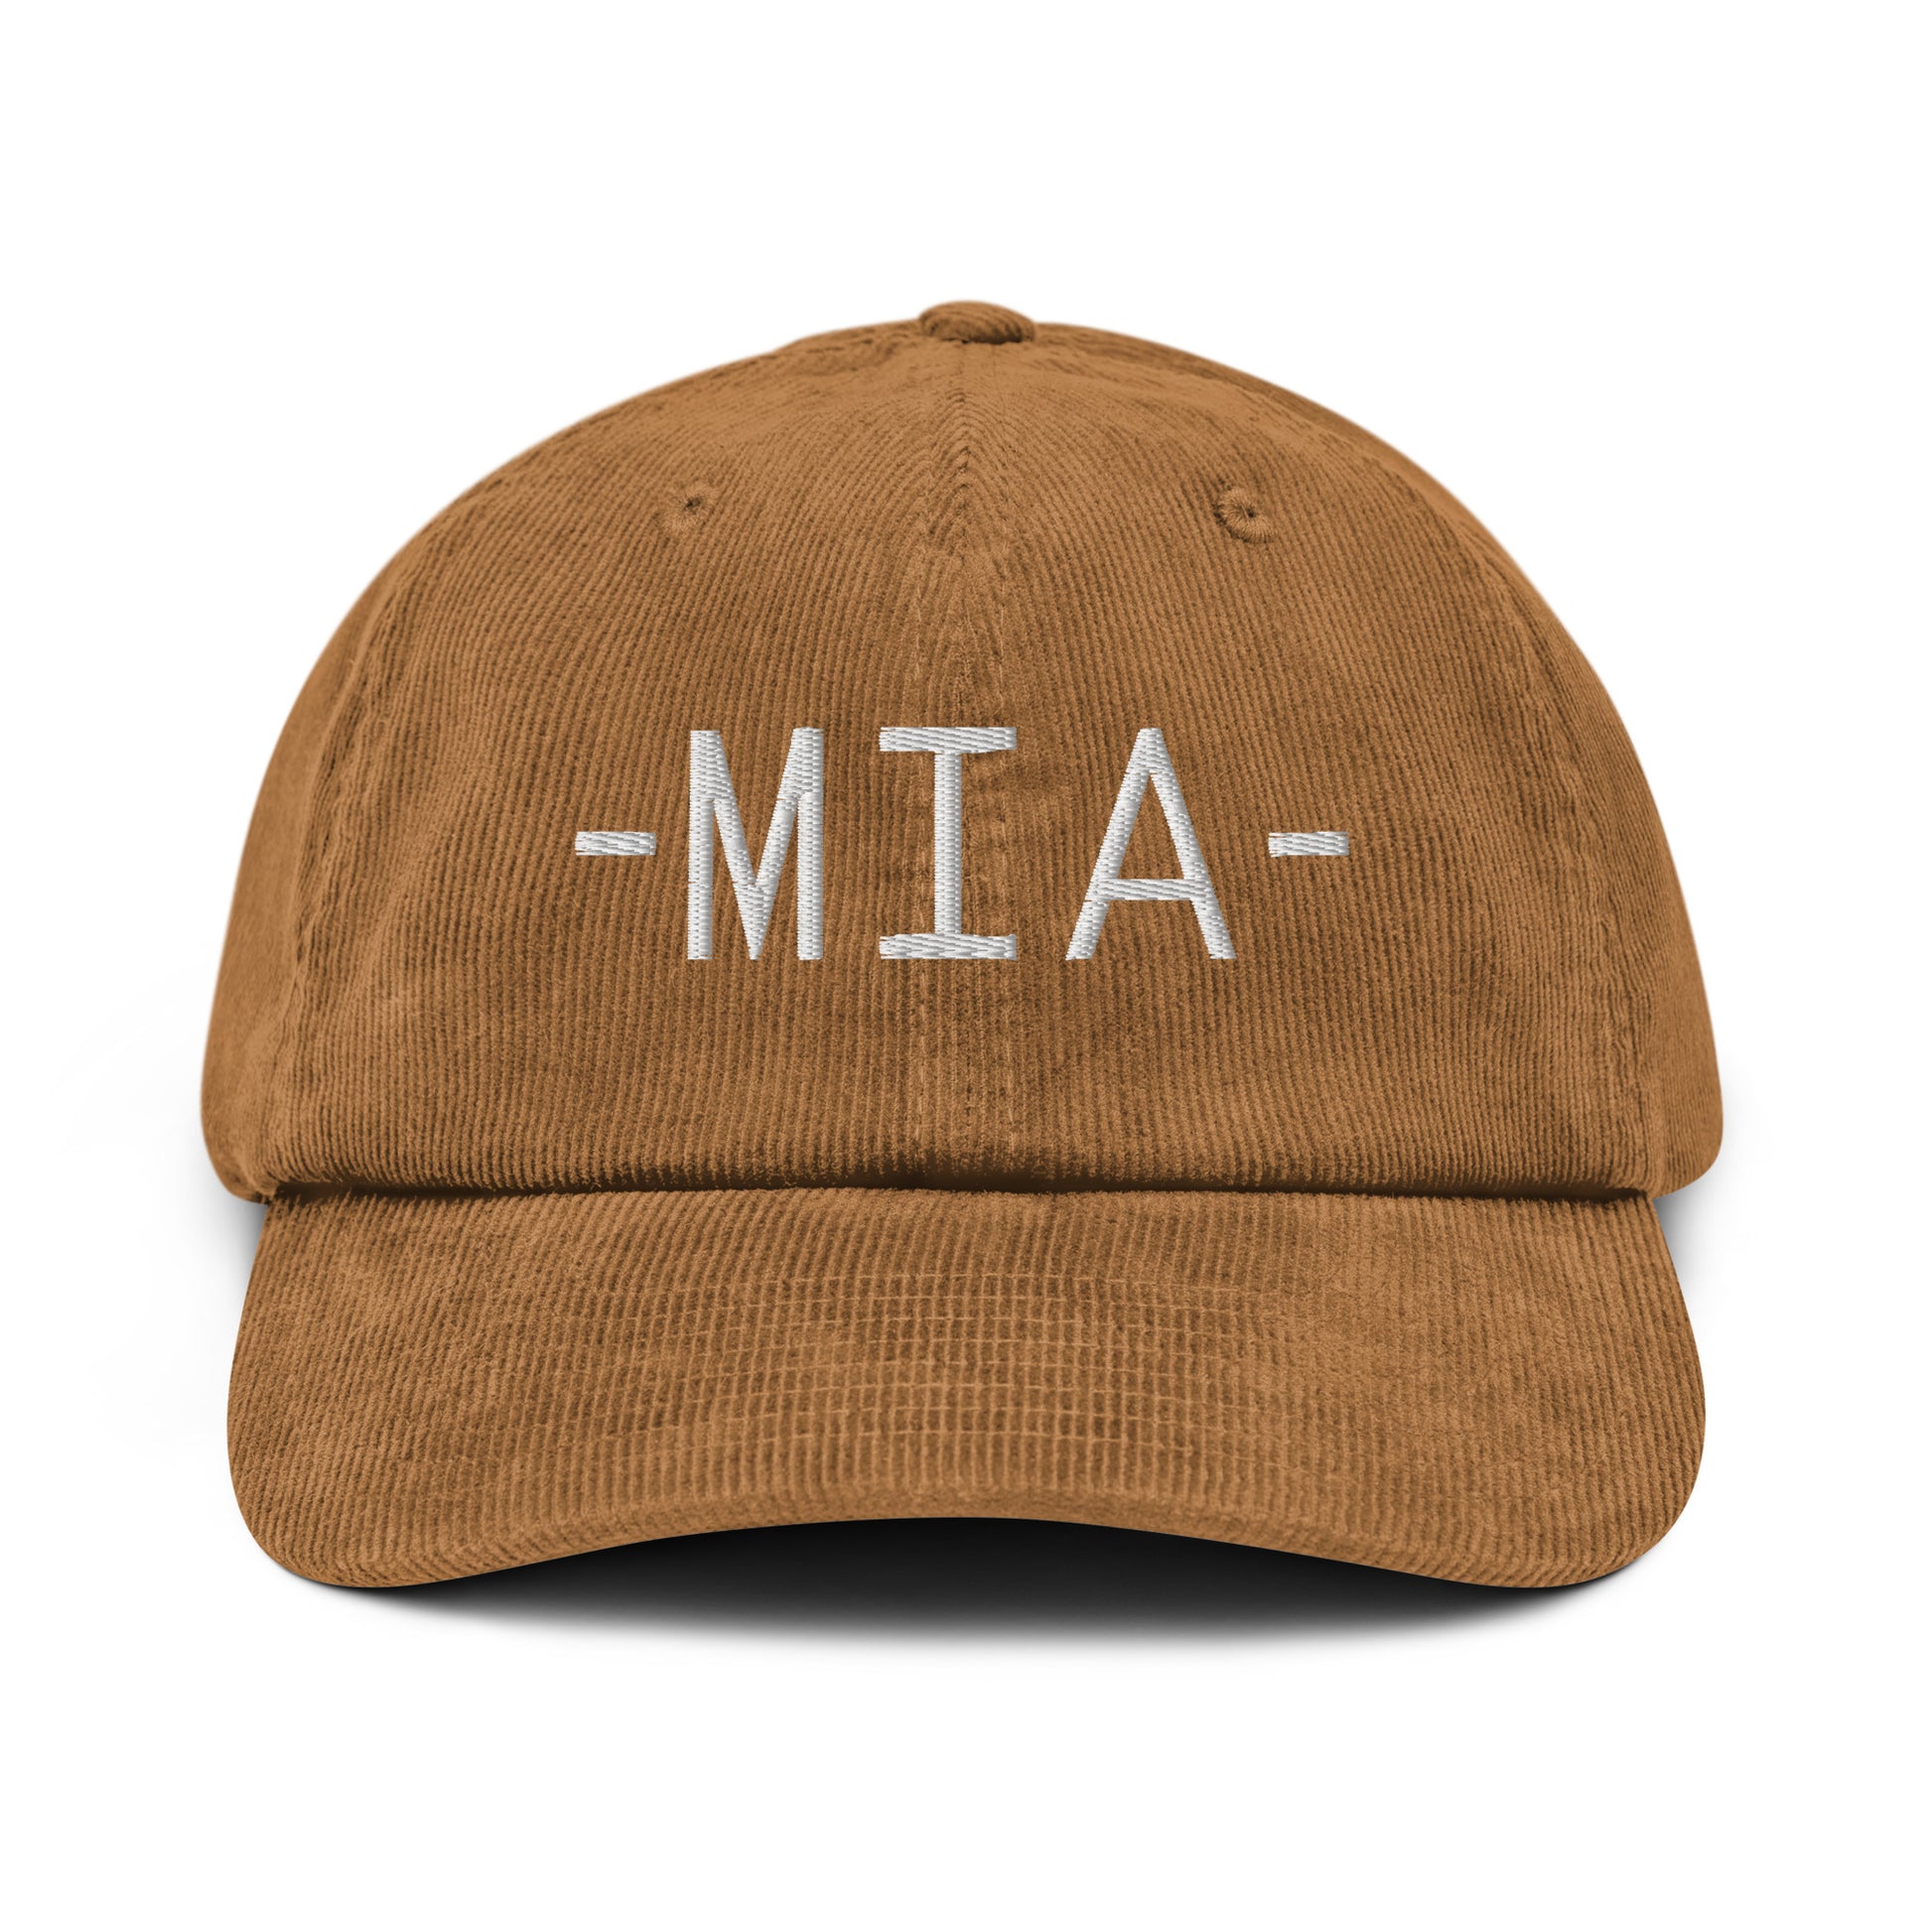 Souvenir Corduroy Hat - White • MIA Miami • YHM Designs - Image 18